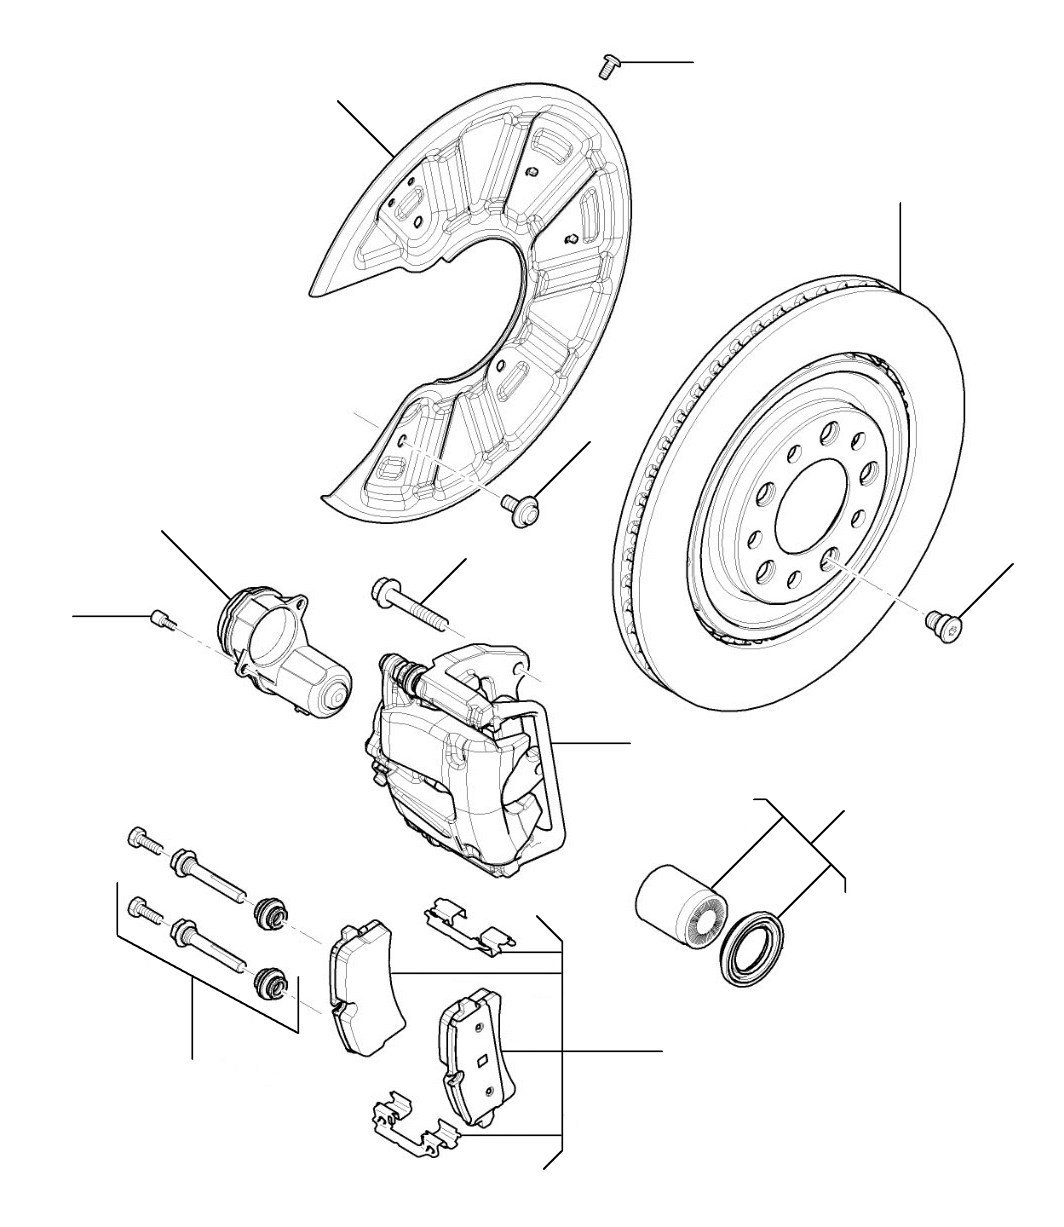 Rear brakes cast iron mulsanne 2011 till 2016 - Cast Iron